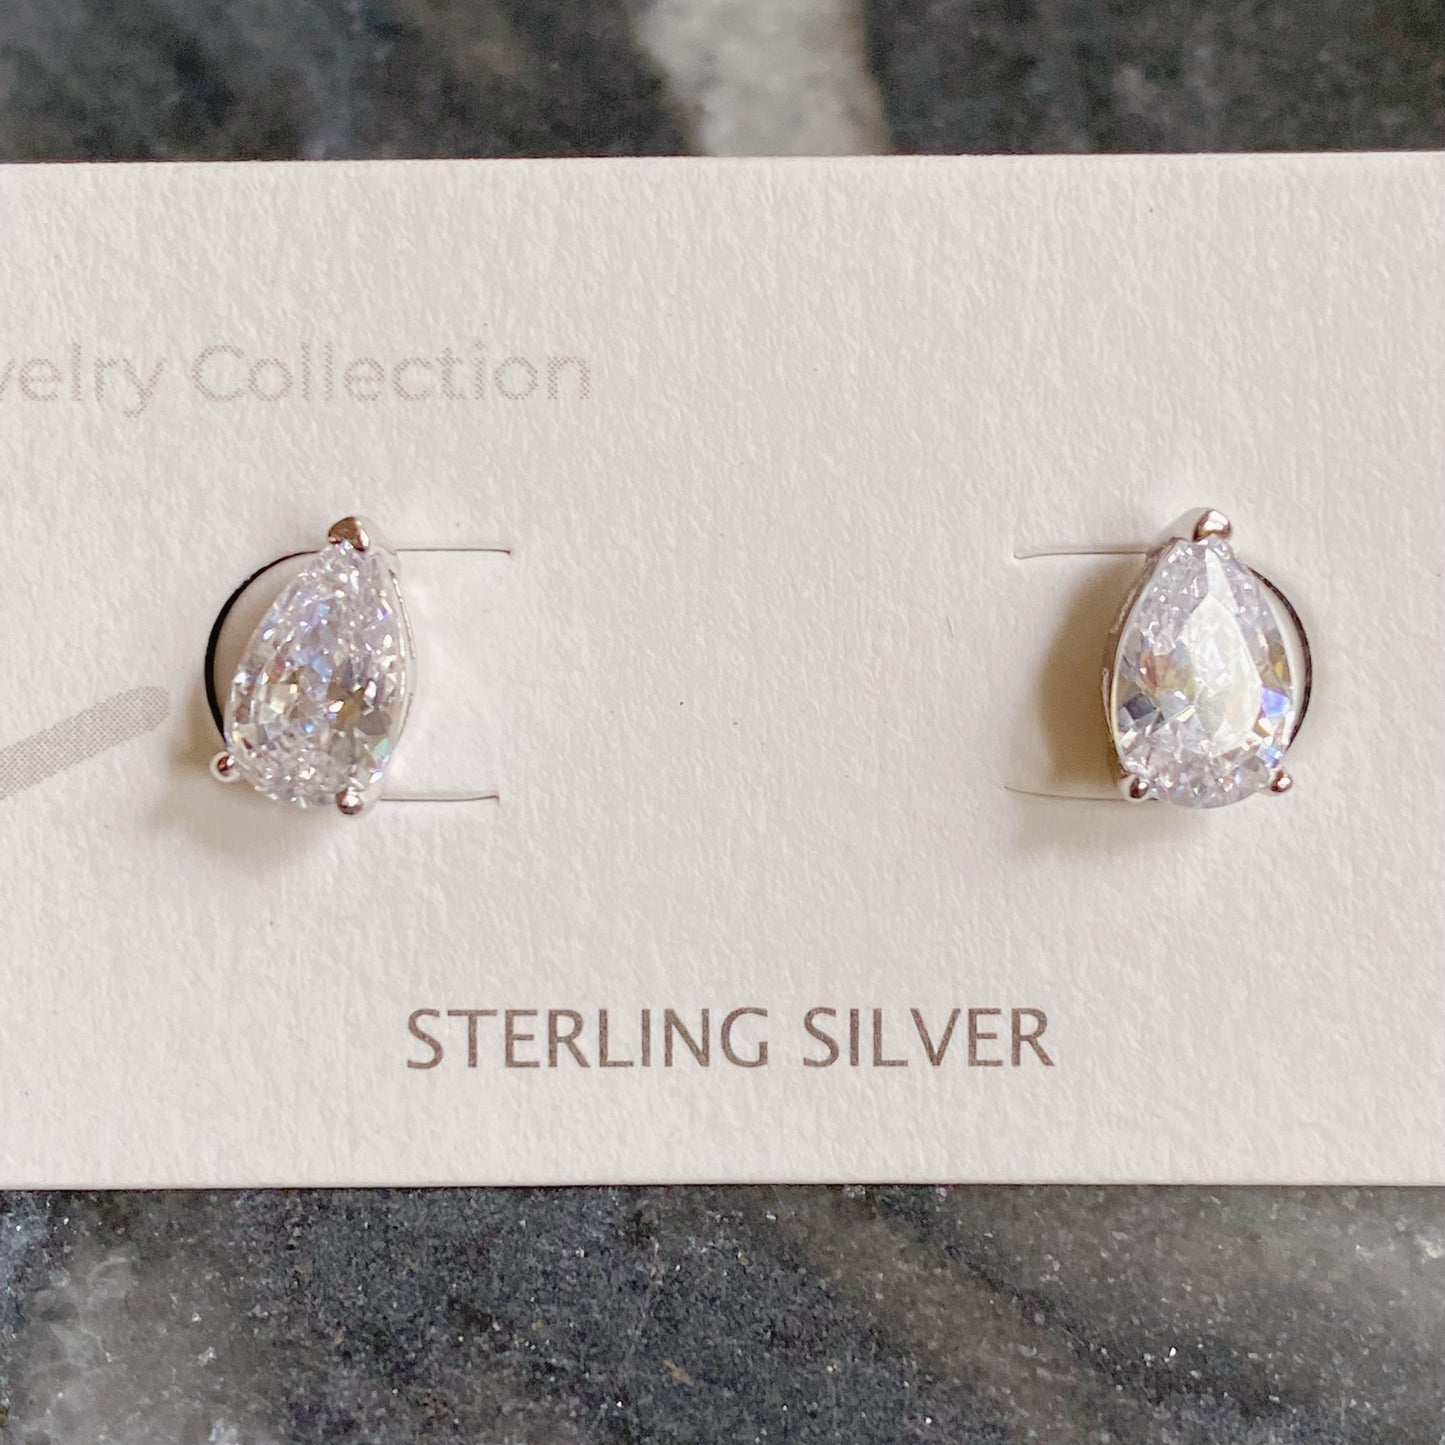 Teardrop Sterling Silver Stud Earrings